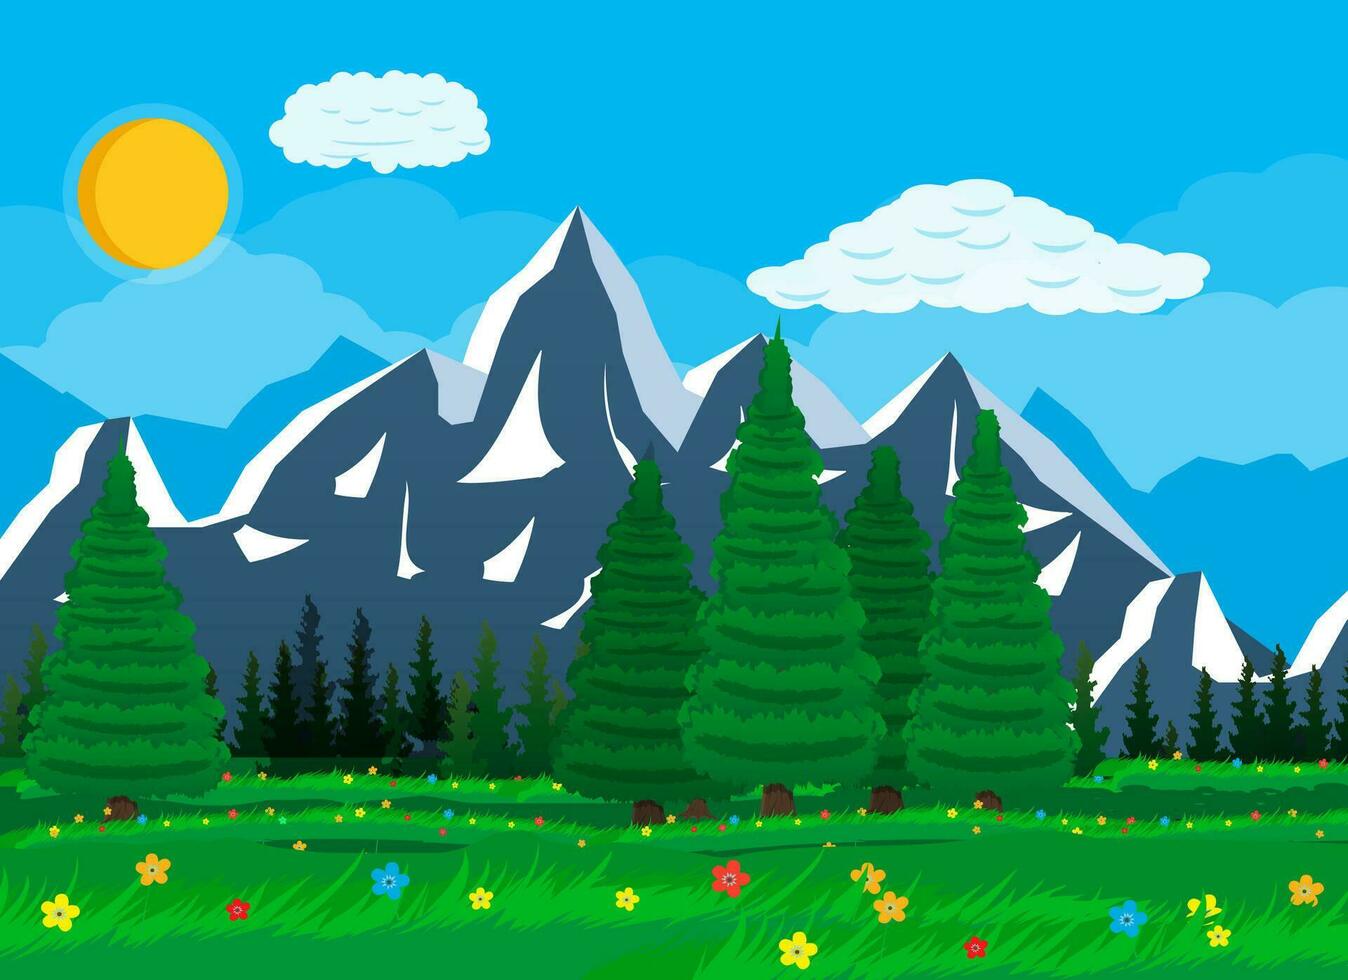 verano naturaleza paisaje con montañas, bosque, césped, flor, cielo, Dom y nubes nacional parque. vector ilustración en plano estilo